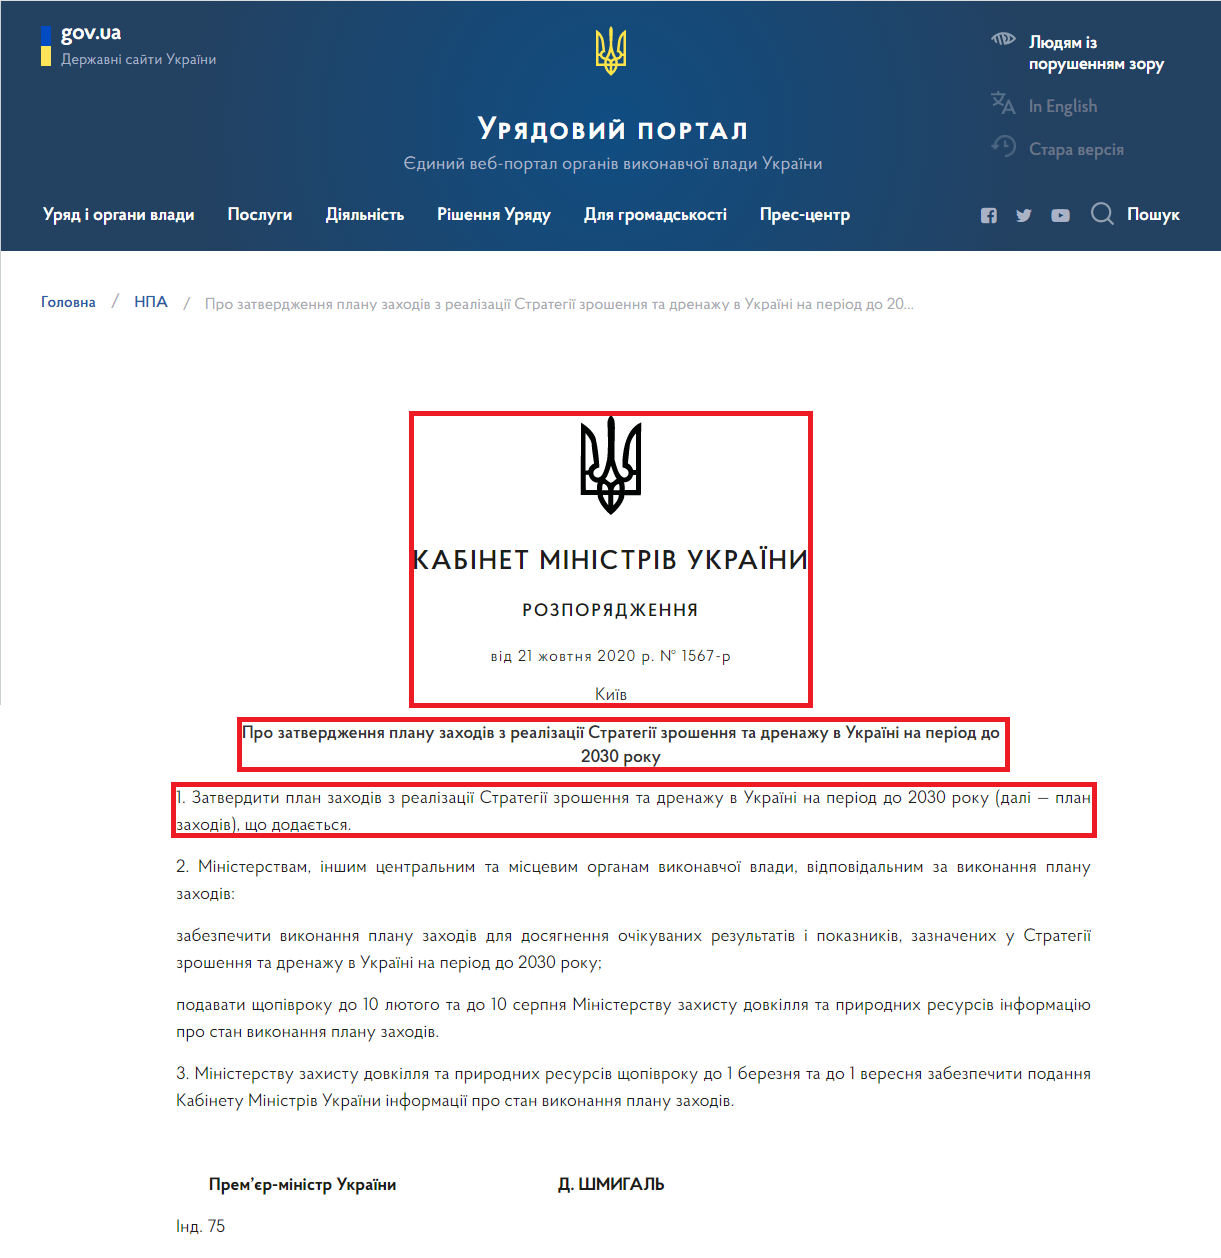 https://www.kmu.gov.ua/npas/pro-zatverdzhennya-planu-zahodiv-z-realizaciyi-strategiyi-zroshennya-ta-drenazhu-s211020